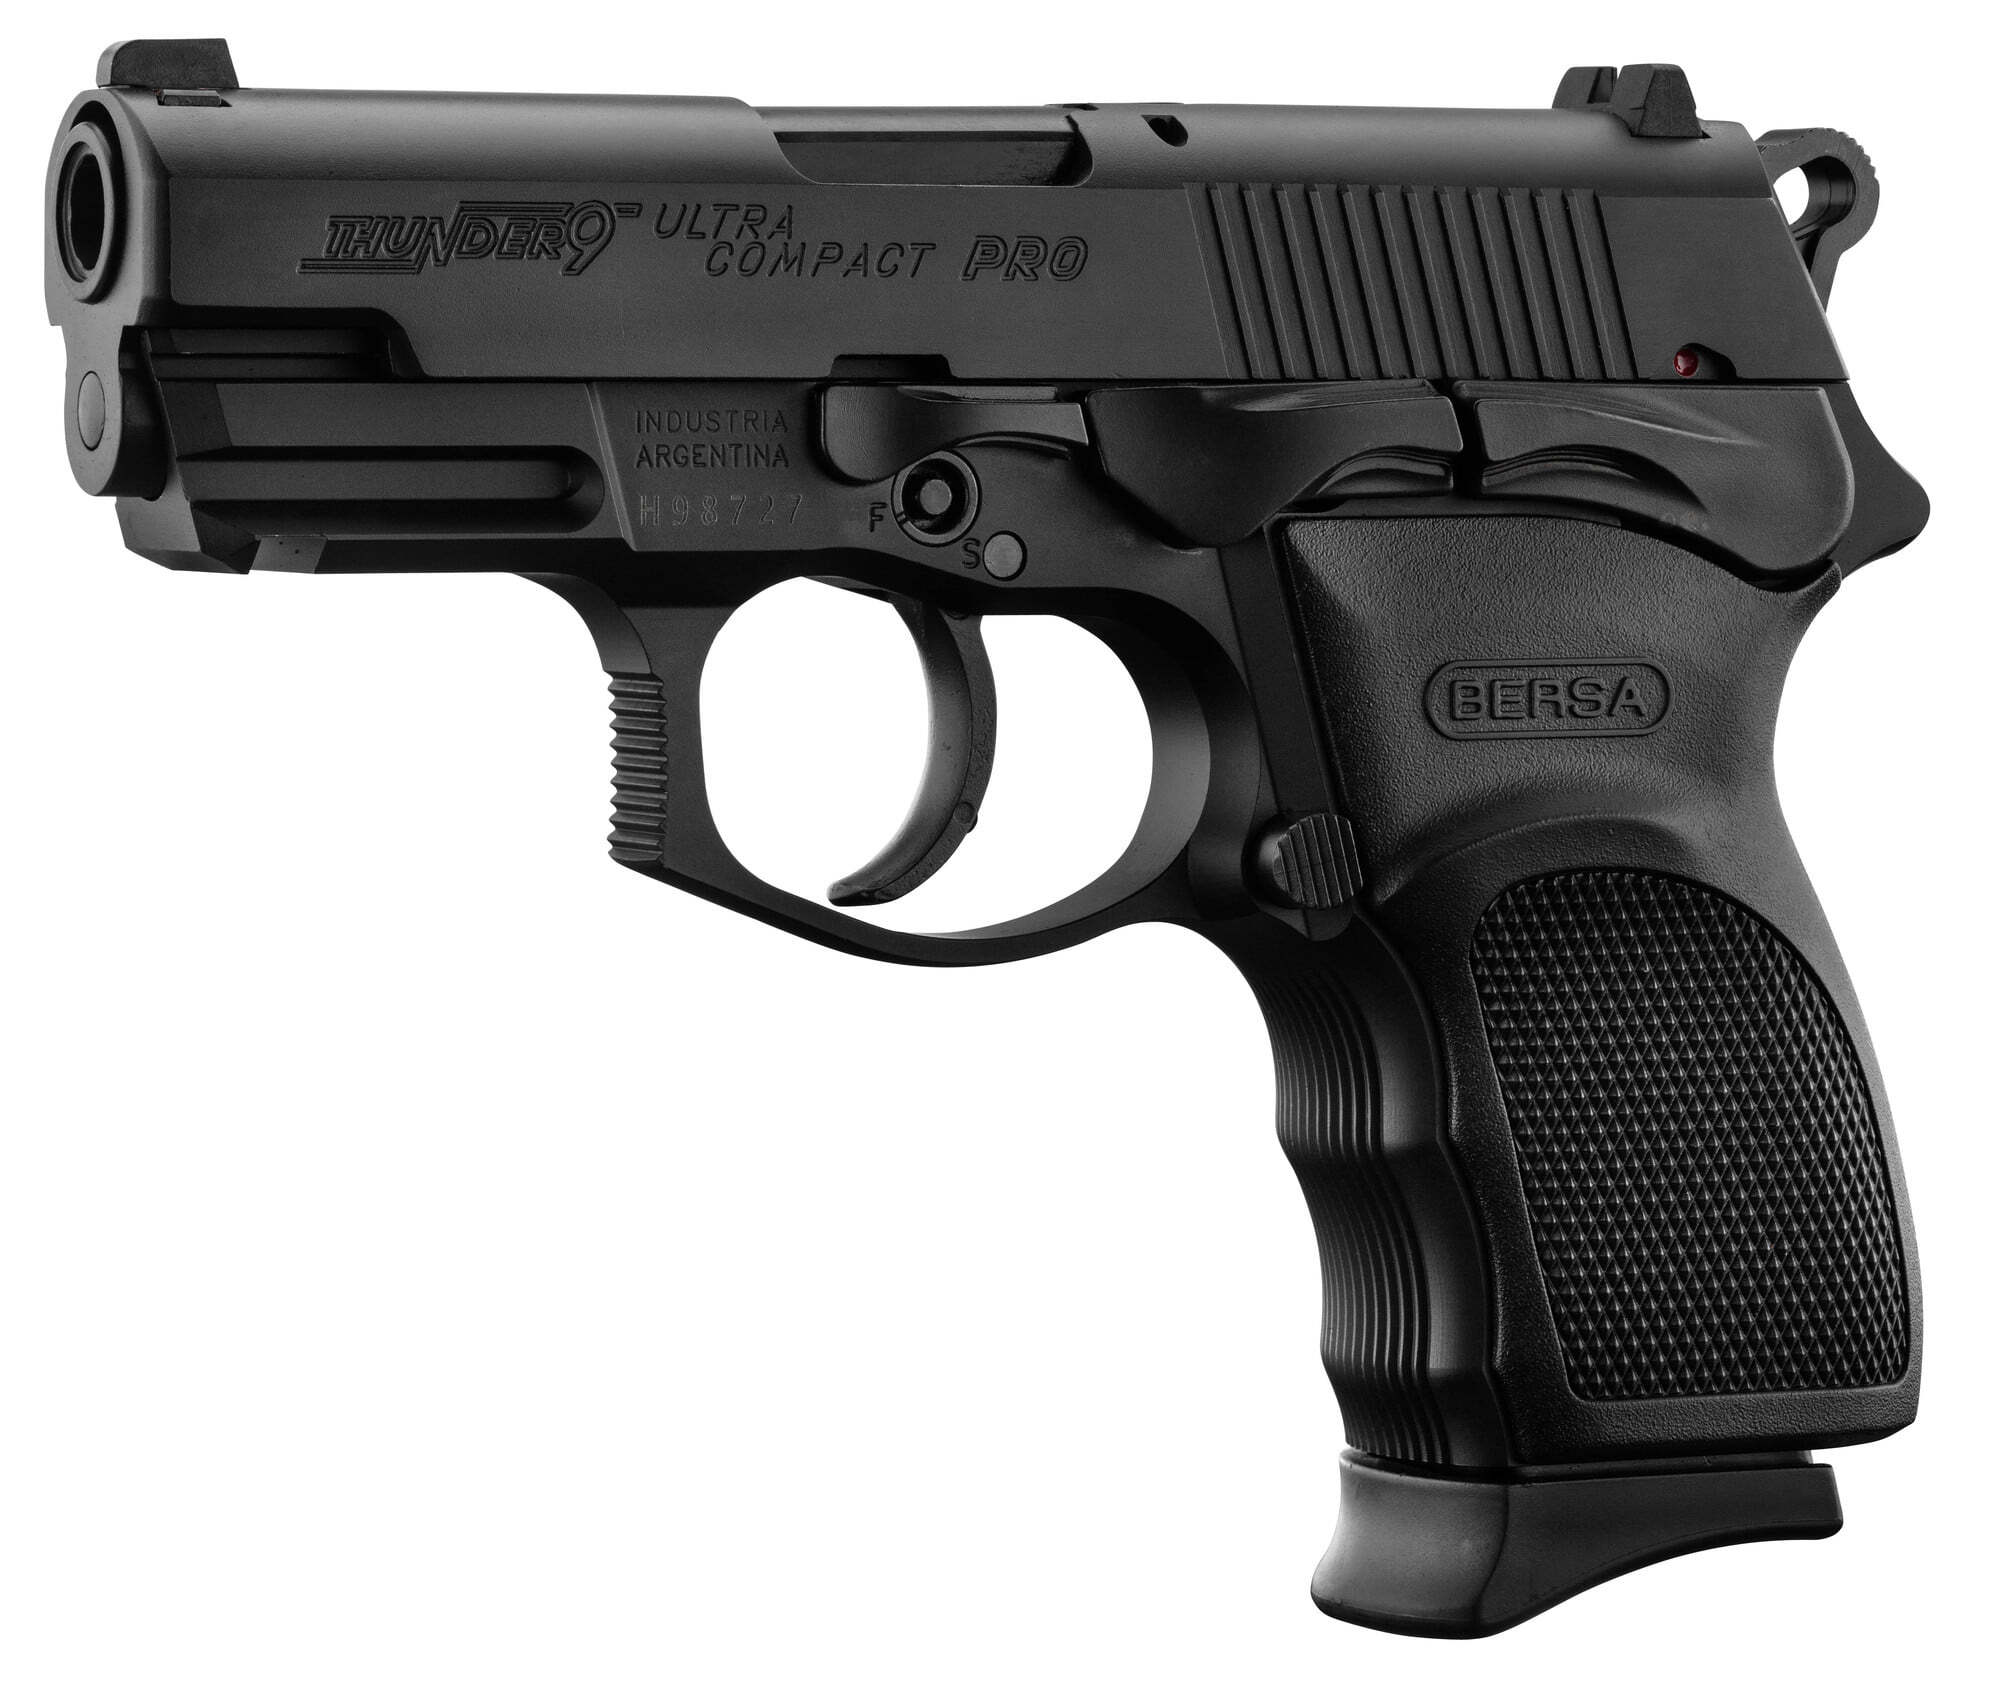 Pistolet BERSA THUNDER 9 Mm Ultra Compact Pro Noir BERSA